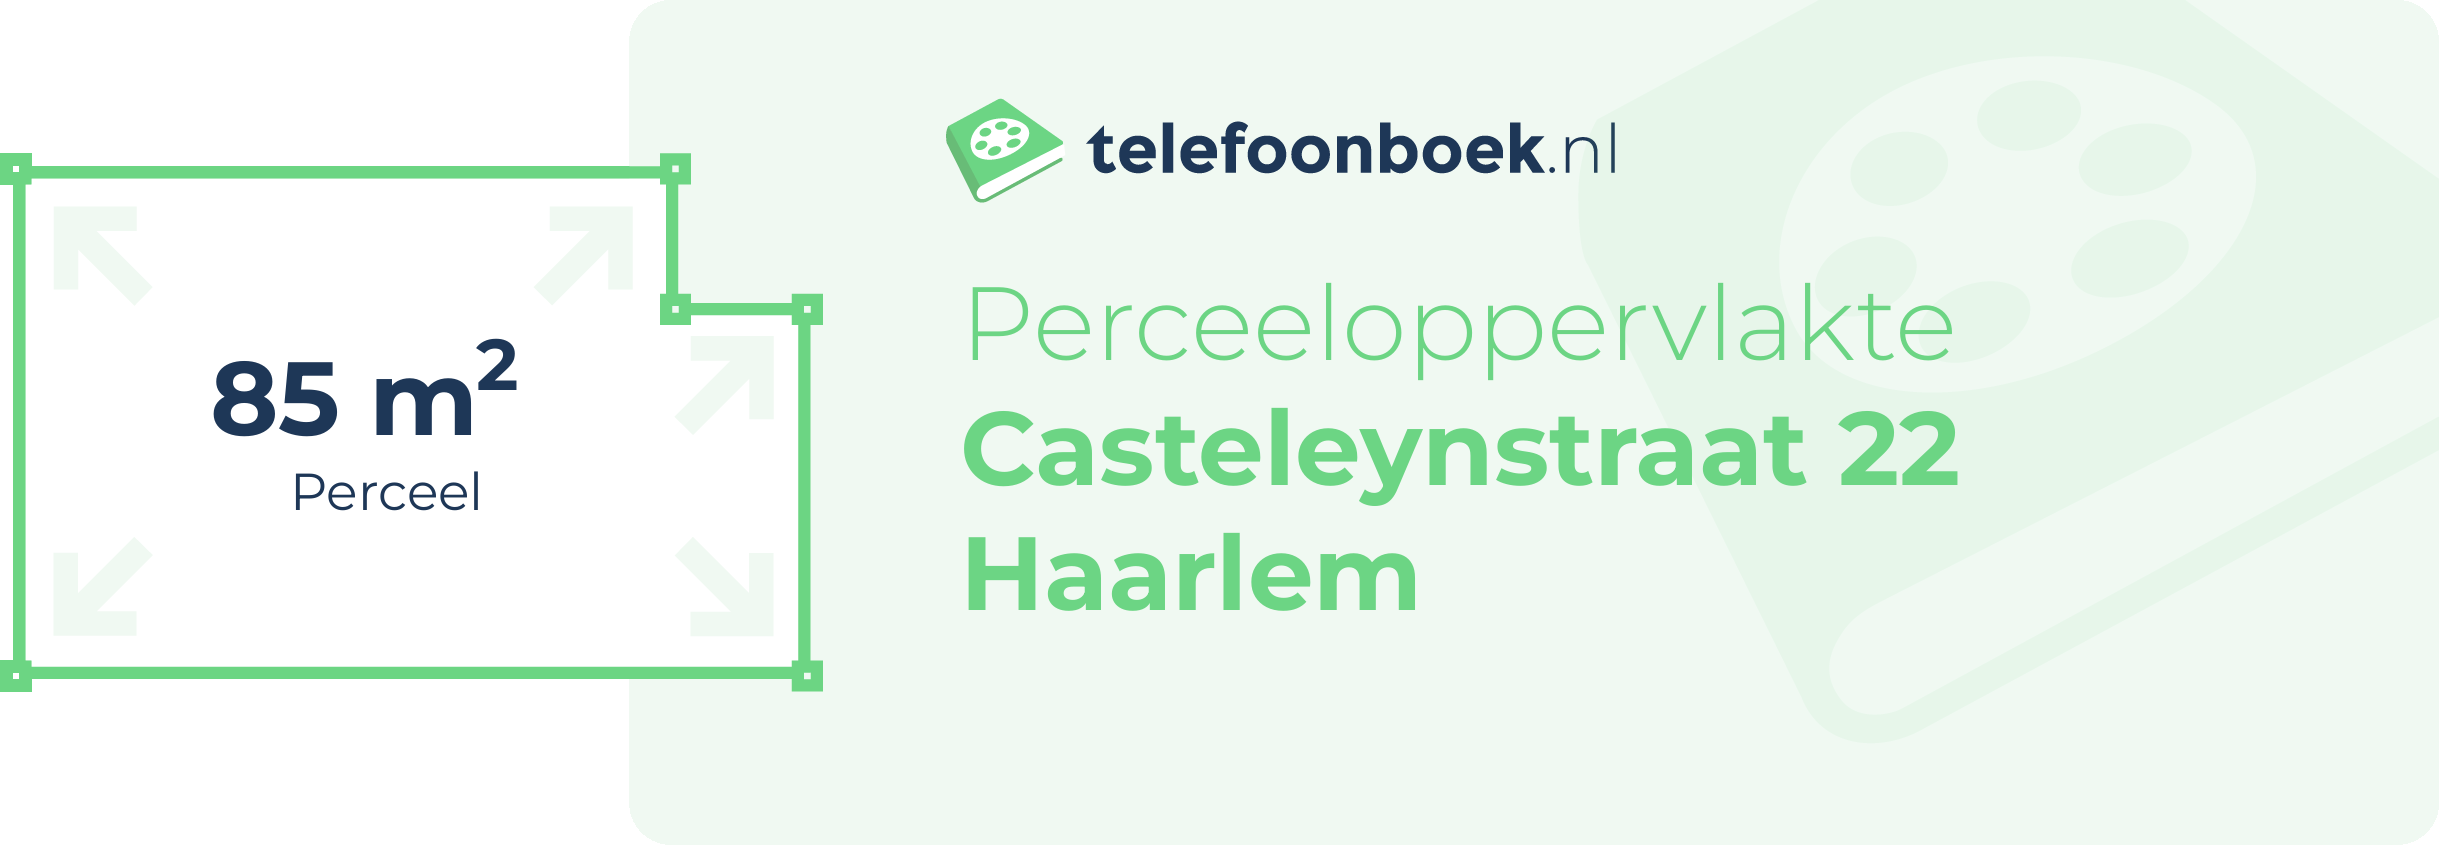 Perceeloppervlakte Casteleynstraat 22 Haarlem